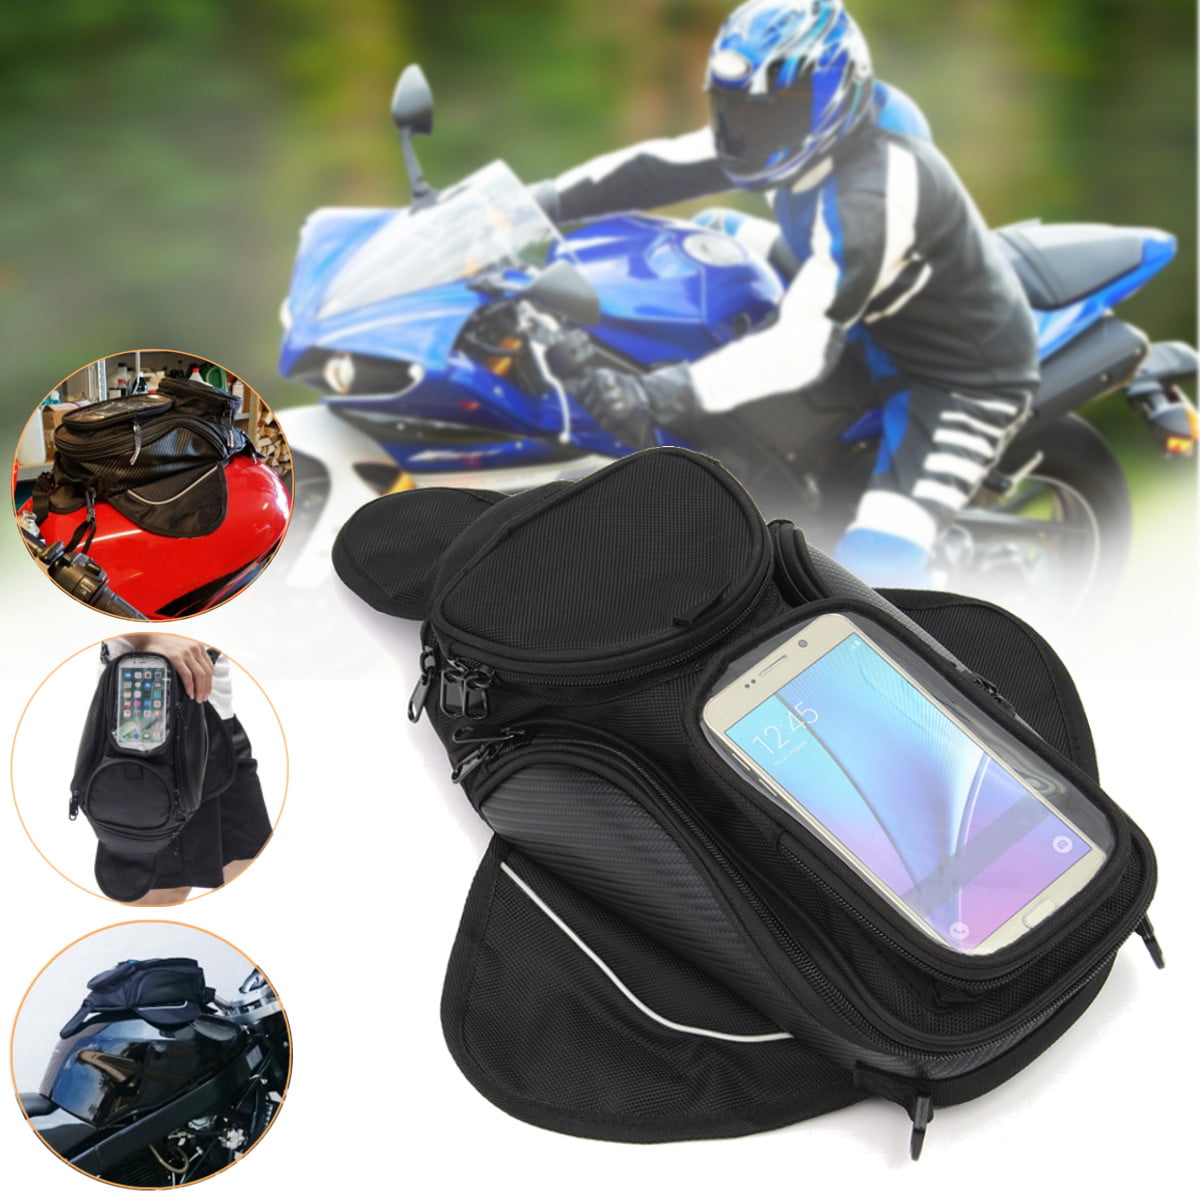 Motorcycle Tank Bag Oxford Saddle Black Motorbike Bag with Bigger Window